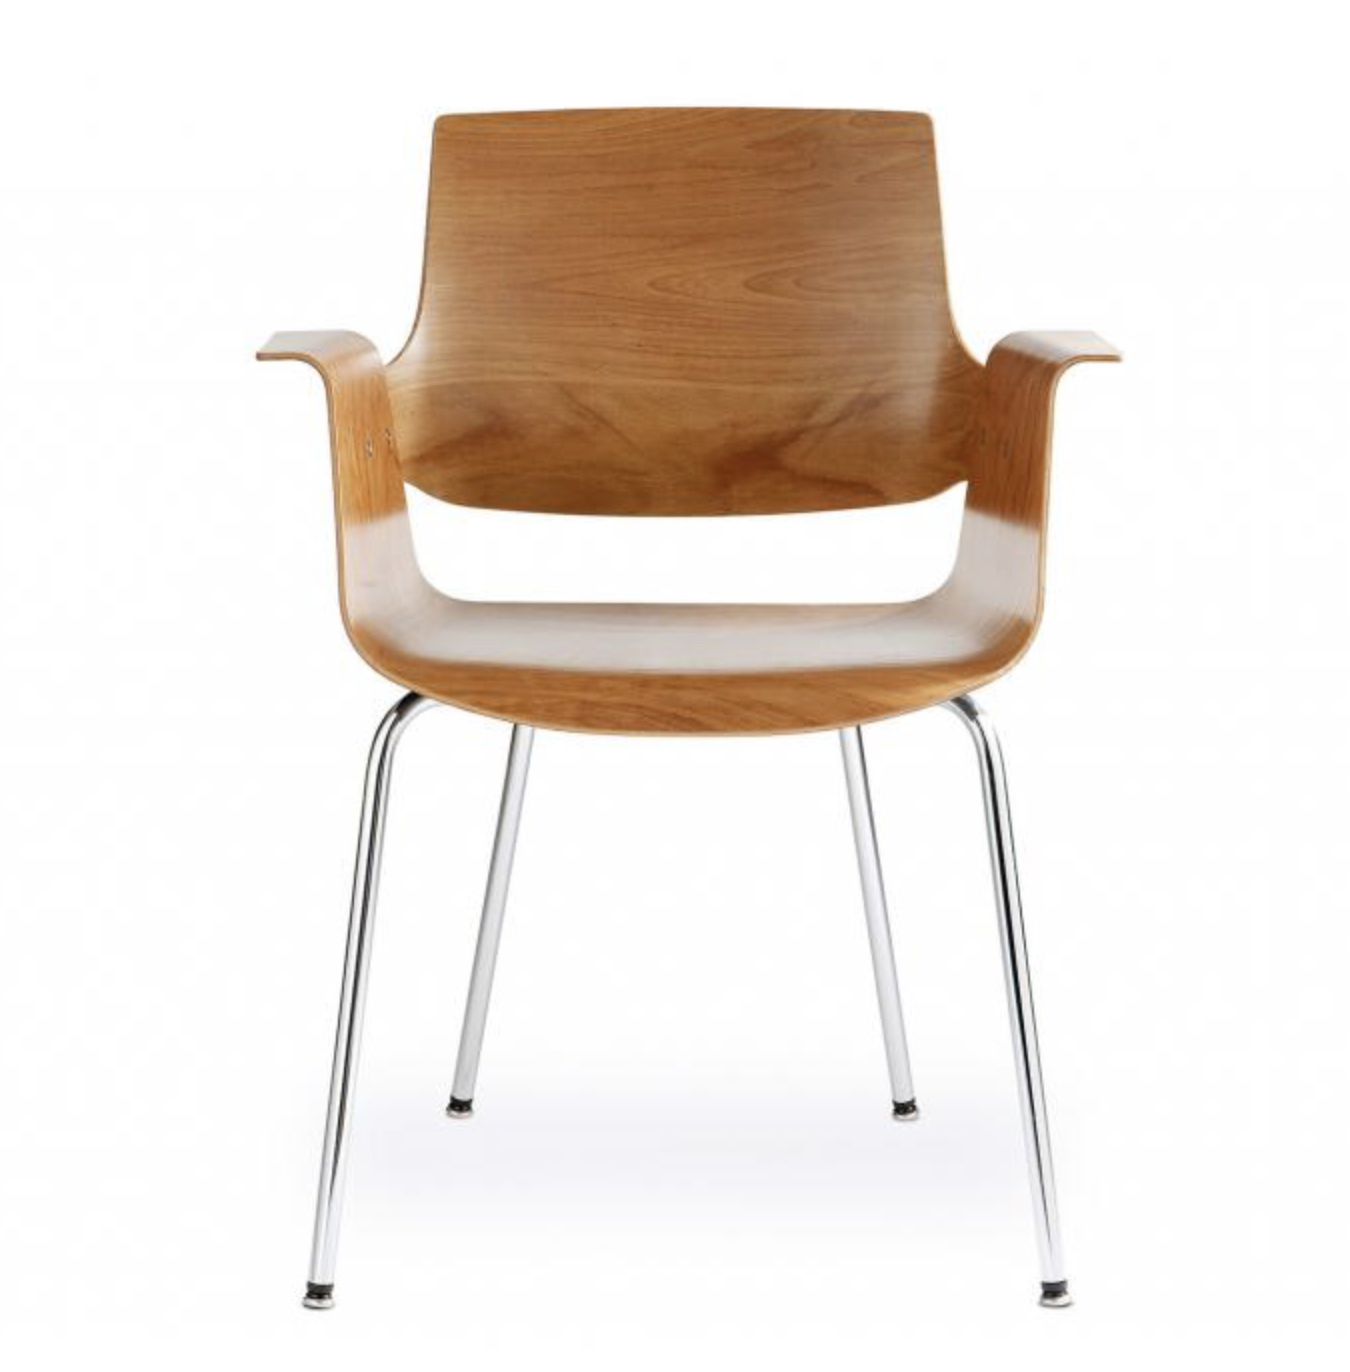 Marchand-Stuhl 4060 von embru